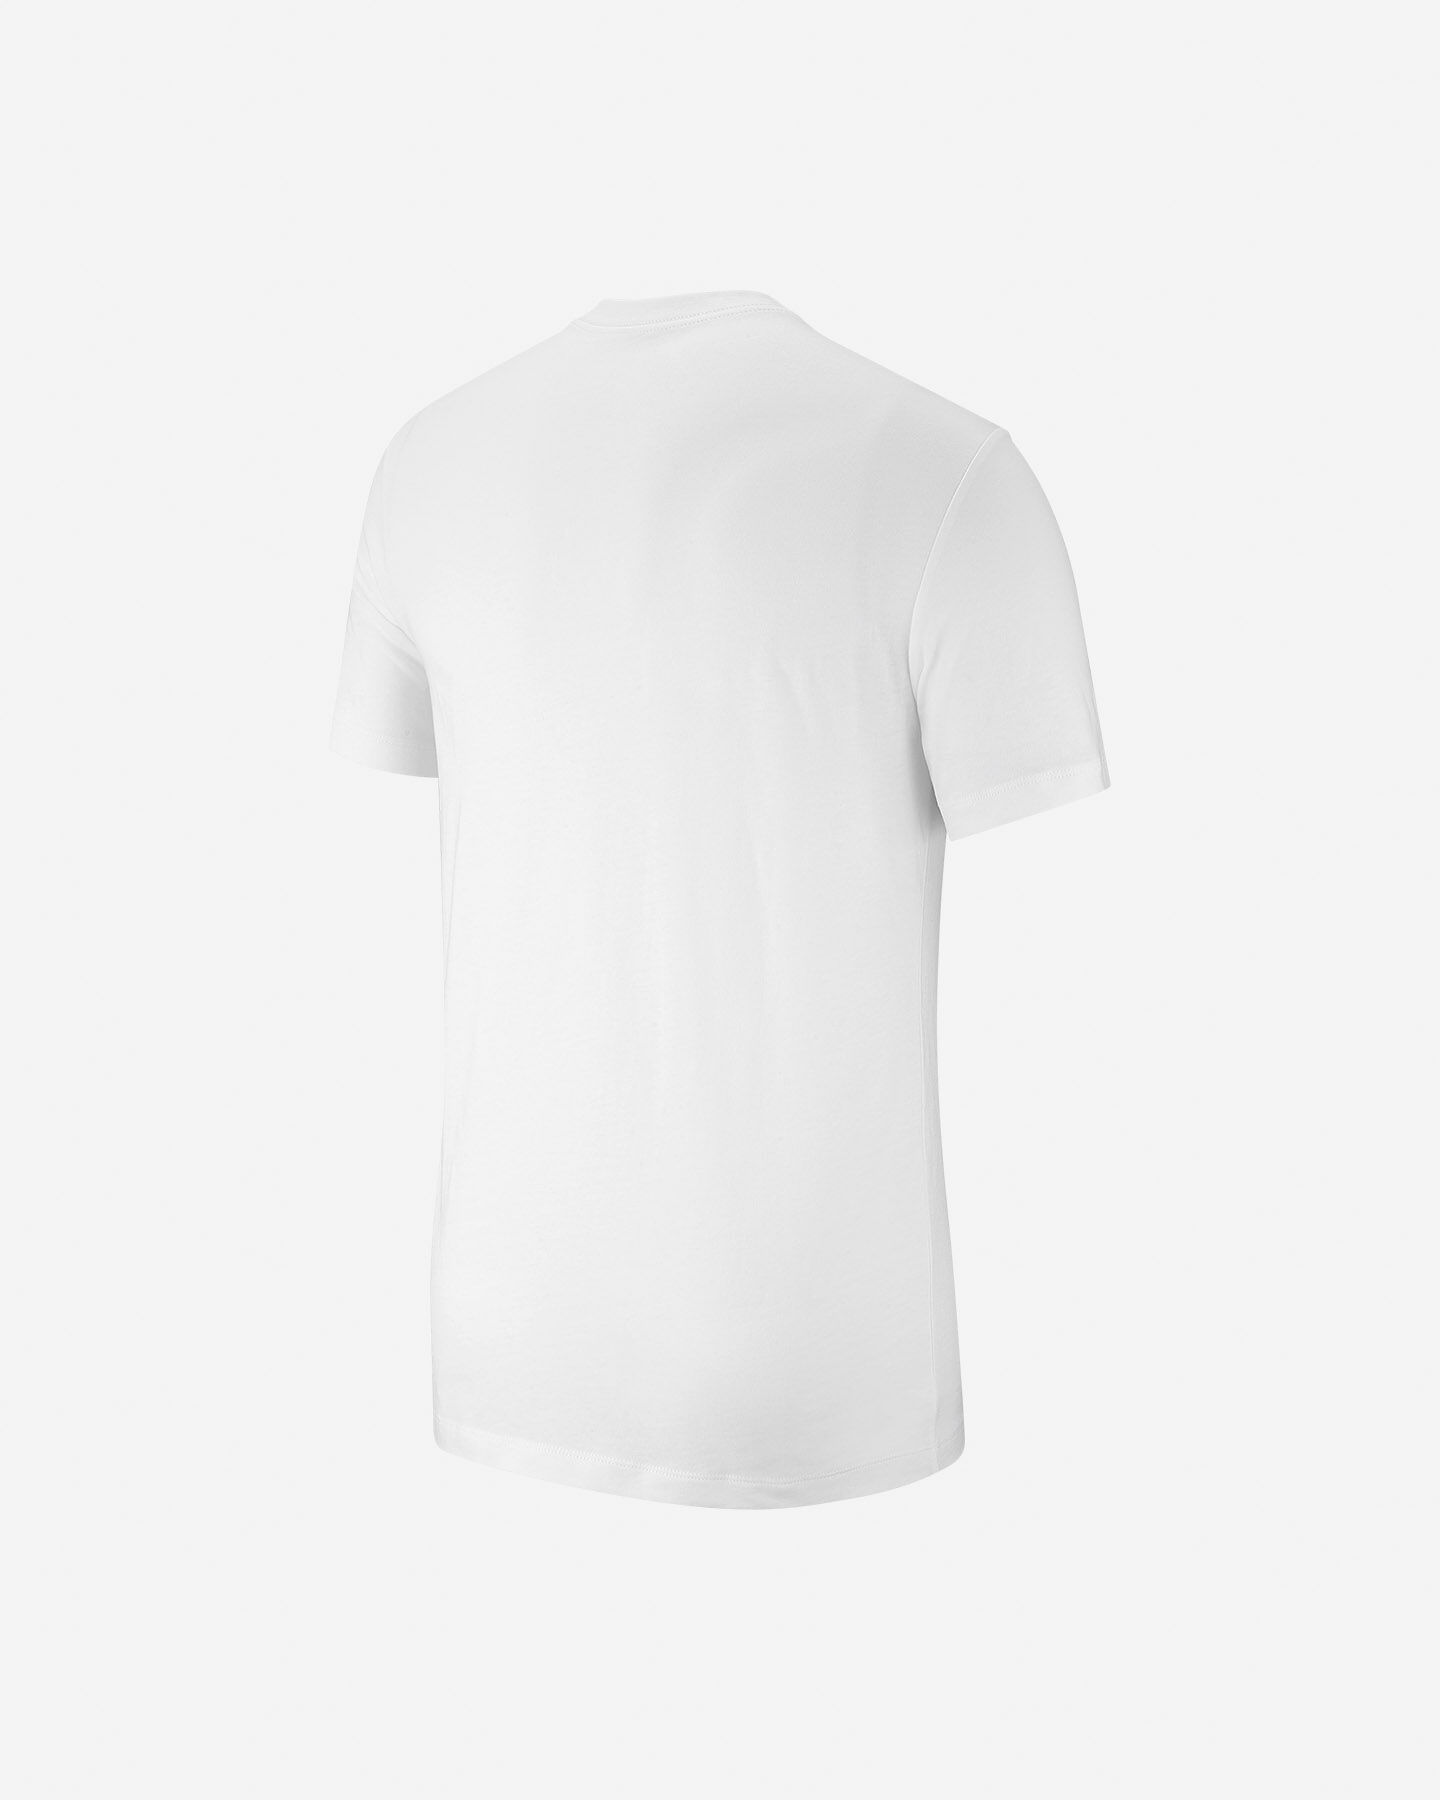  T-Shirt NIKE FUTURA ICON M S2015065|100|S scatto 1